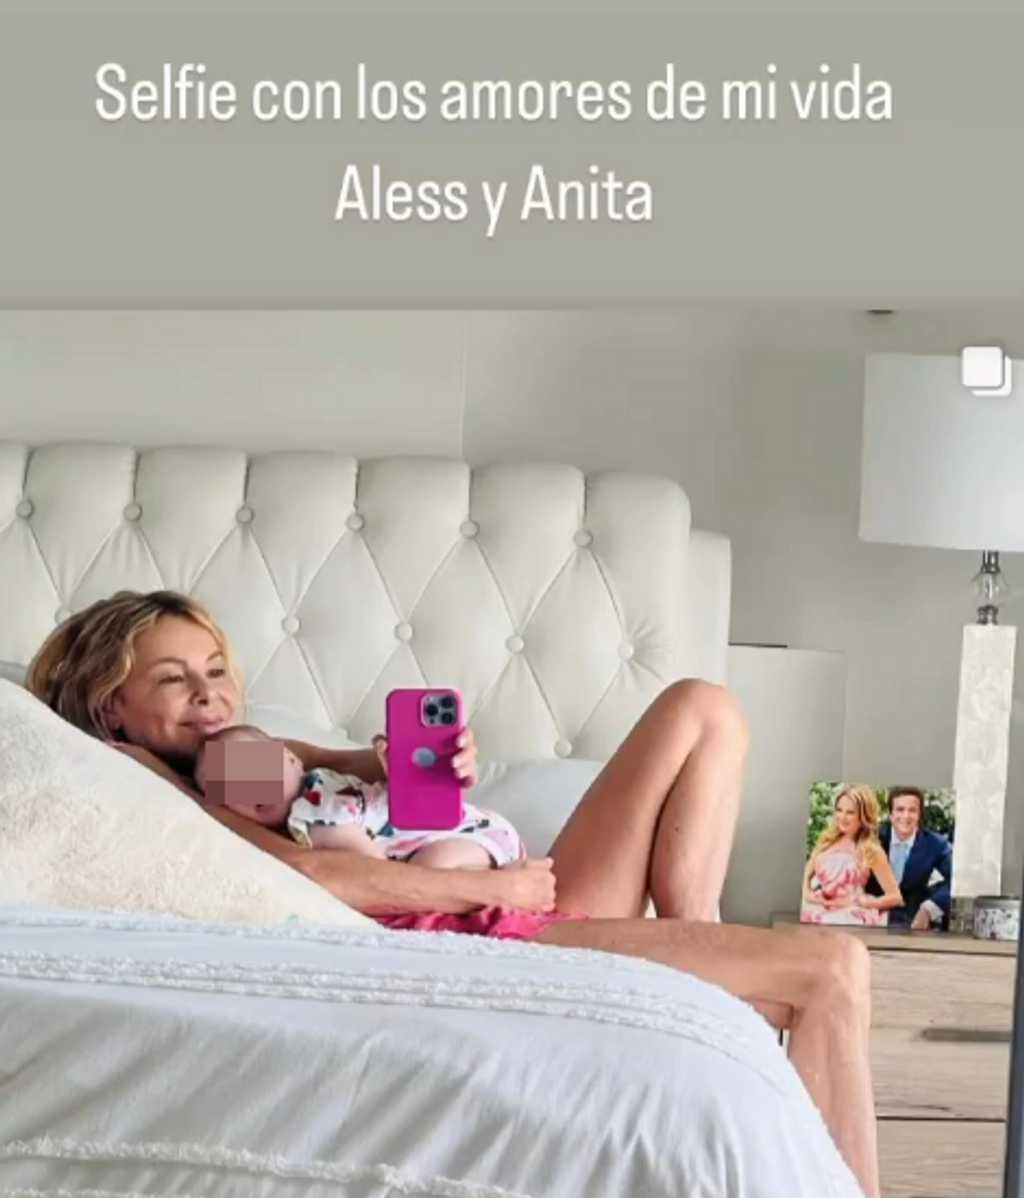 El "selfie" de Ana Obregón con los amores de su vida